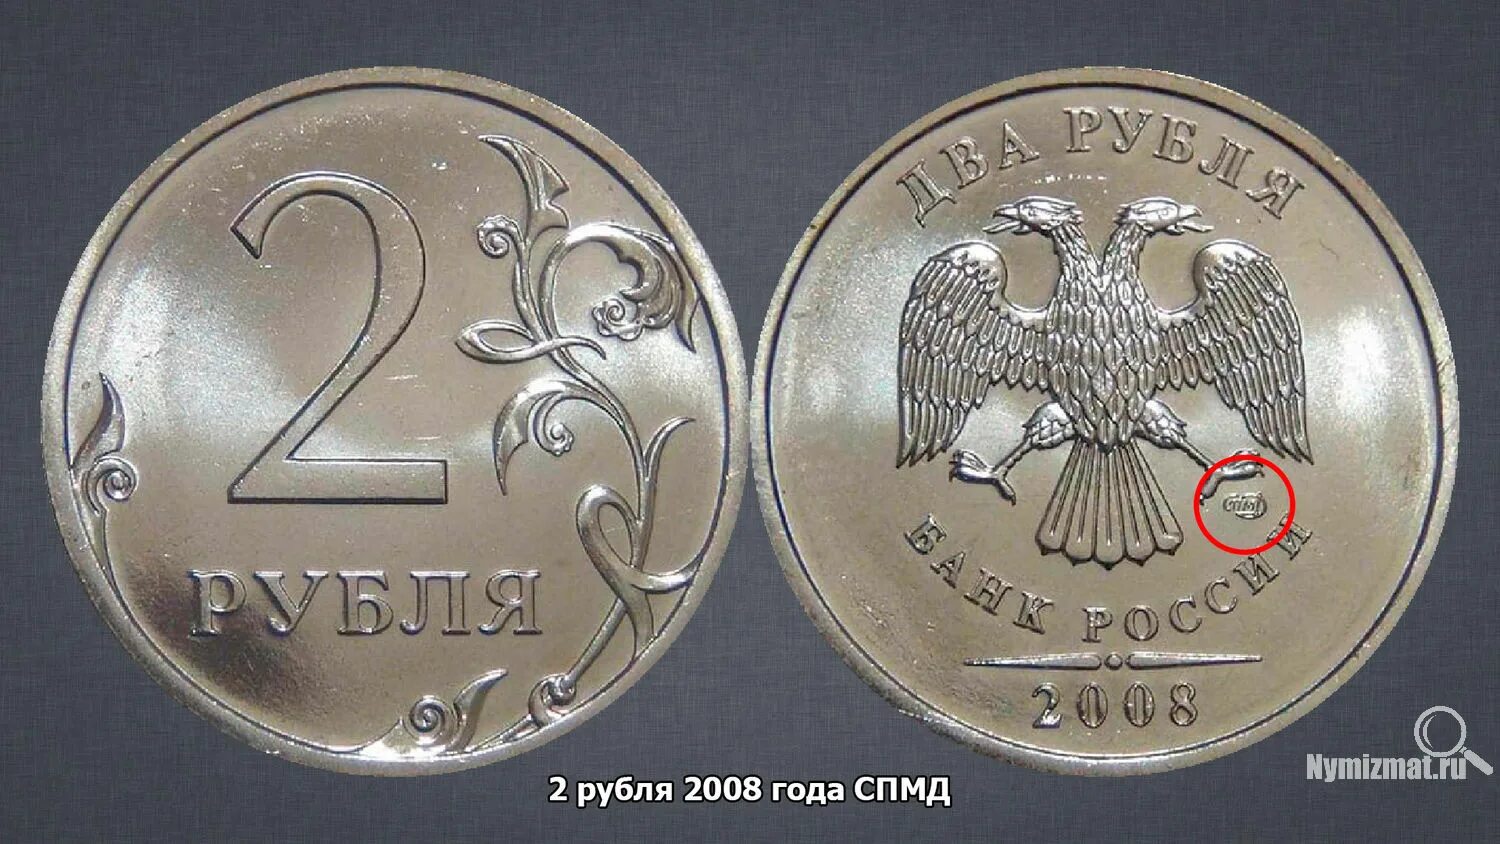 Года за 1 рубль. 2 Рубля 2008 года. 1 Рубль 2008 года. Редкие монеты 2 рубля 2008. Монета 1 рубль 2008 года редкая.